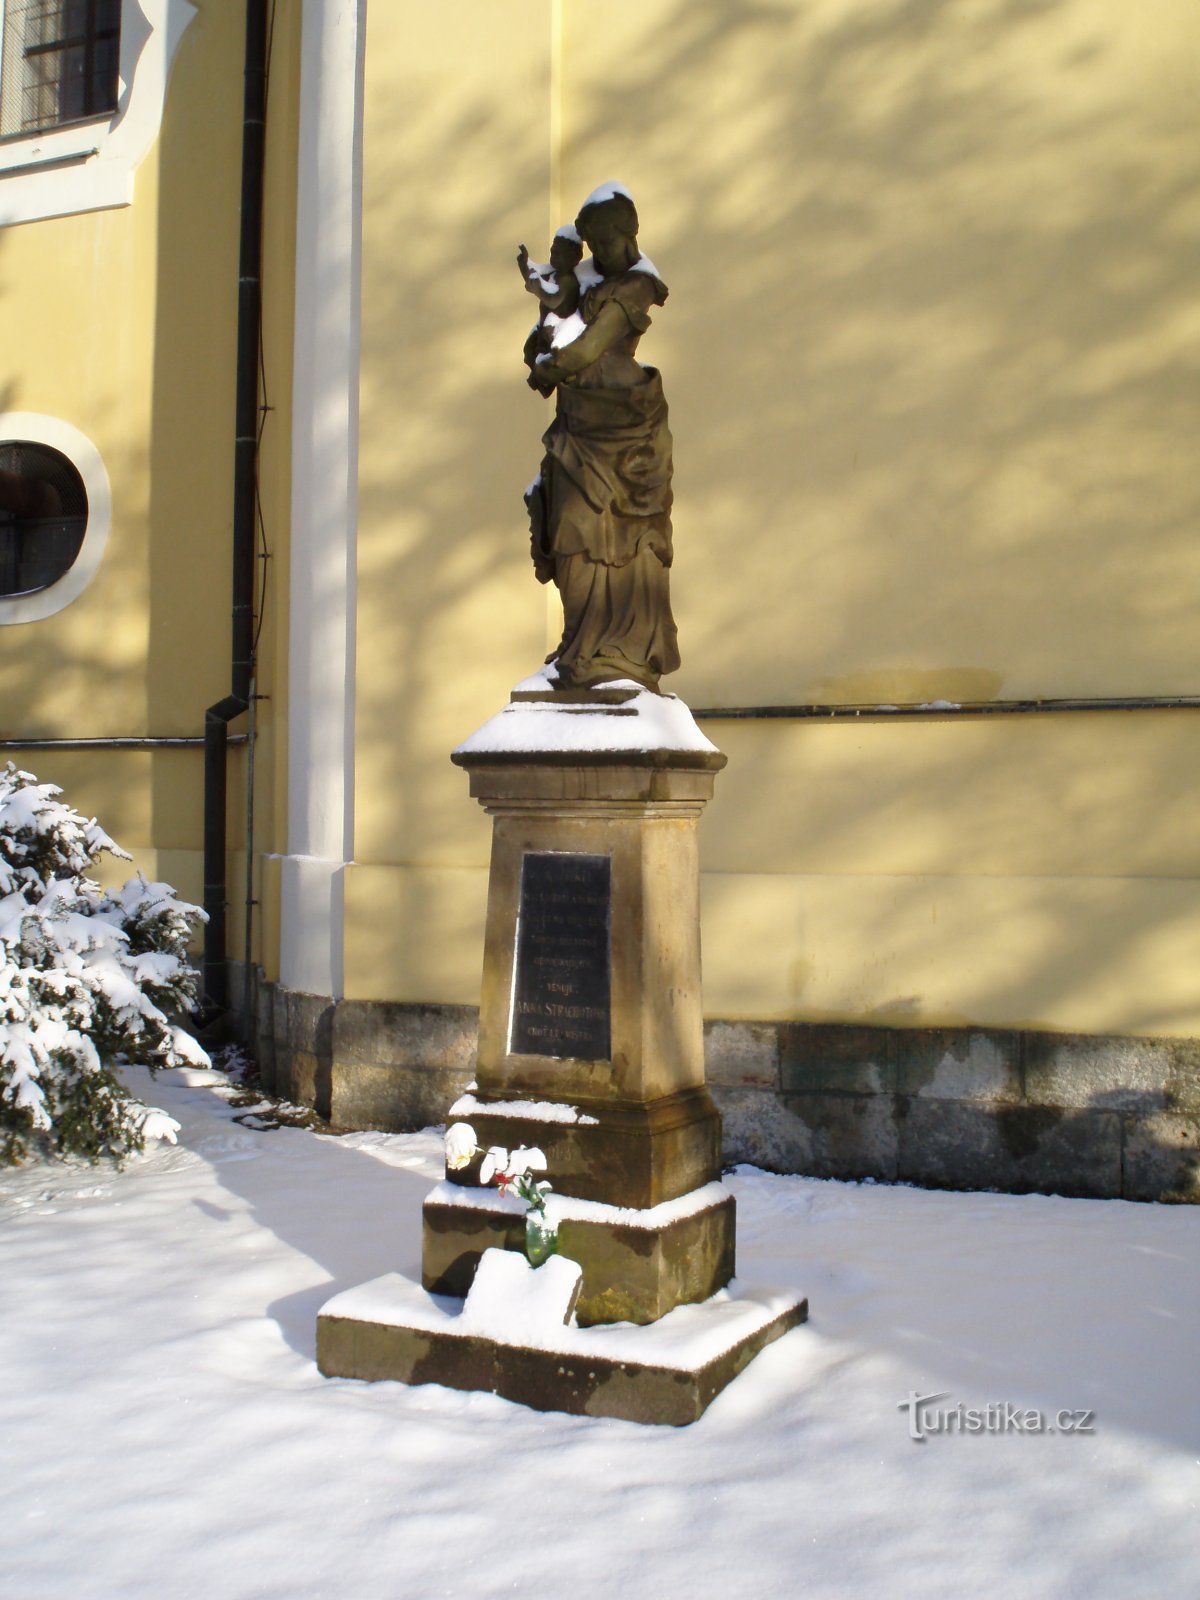 聖母マリア像 (Nový Hradec Králové、27.11.2010 年 XNUMX 月 XNUMX 日)